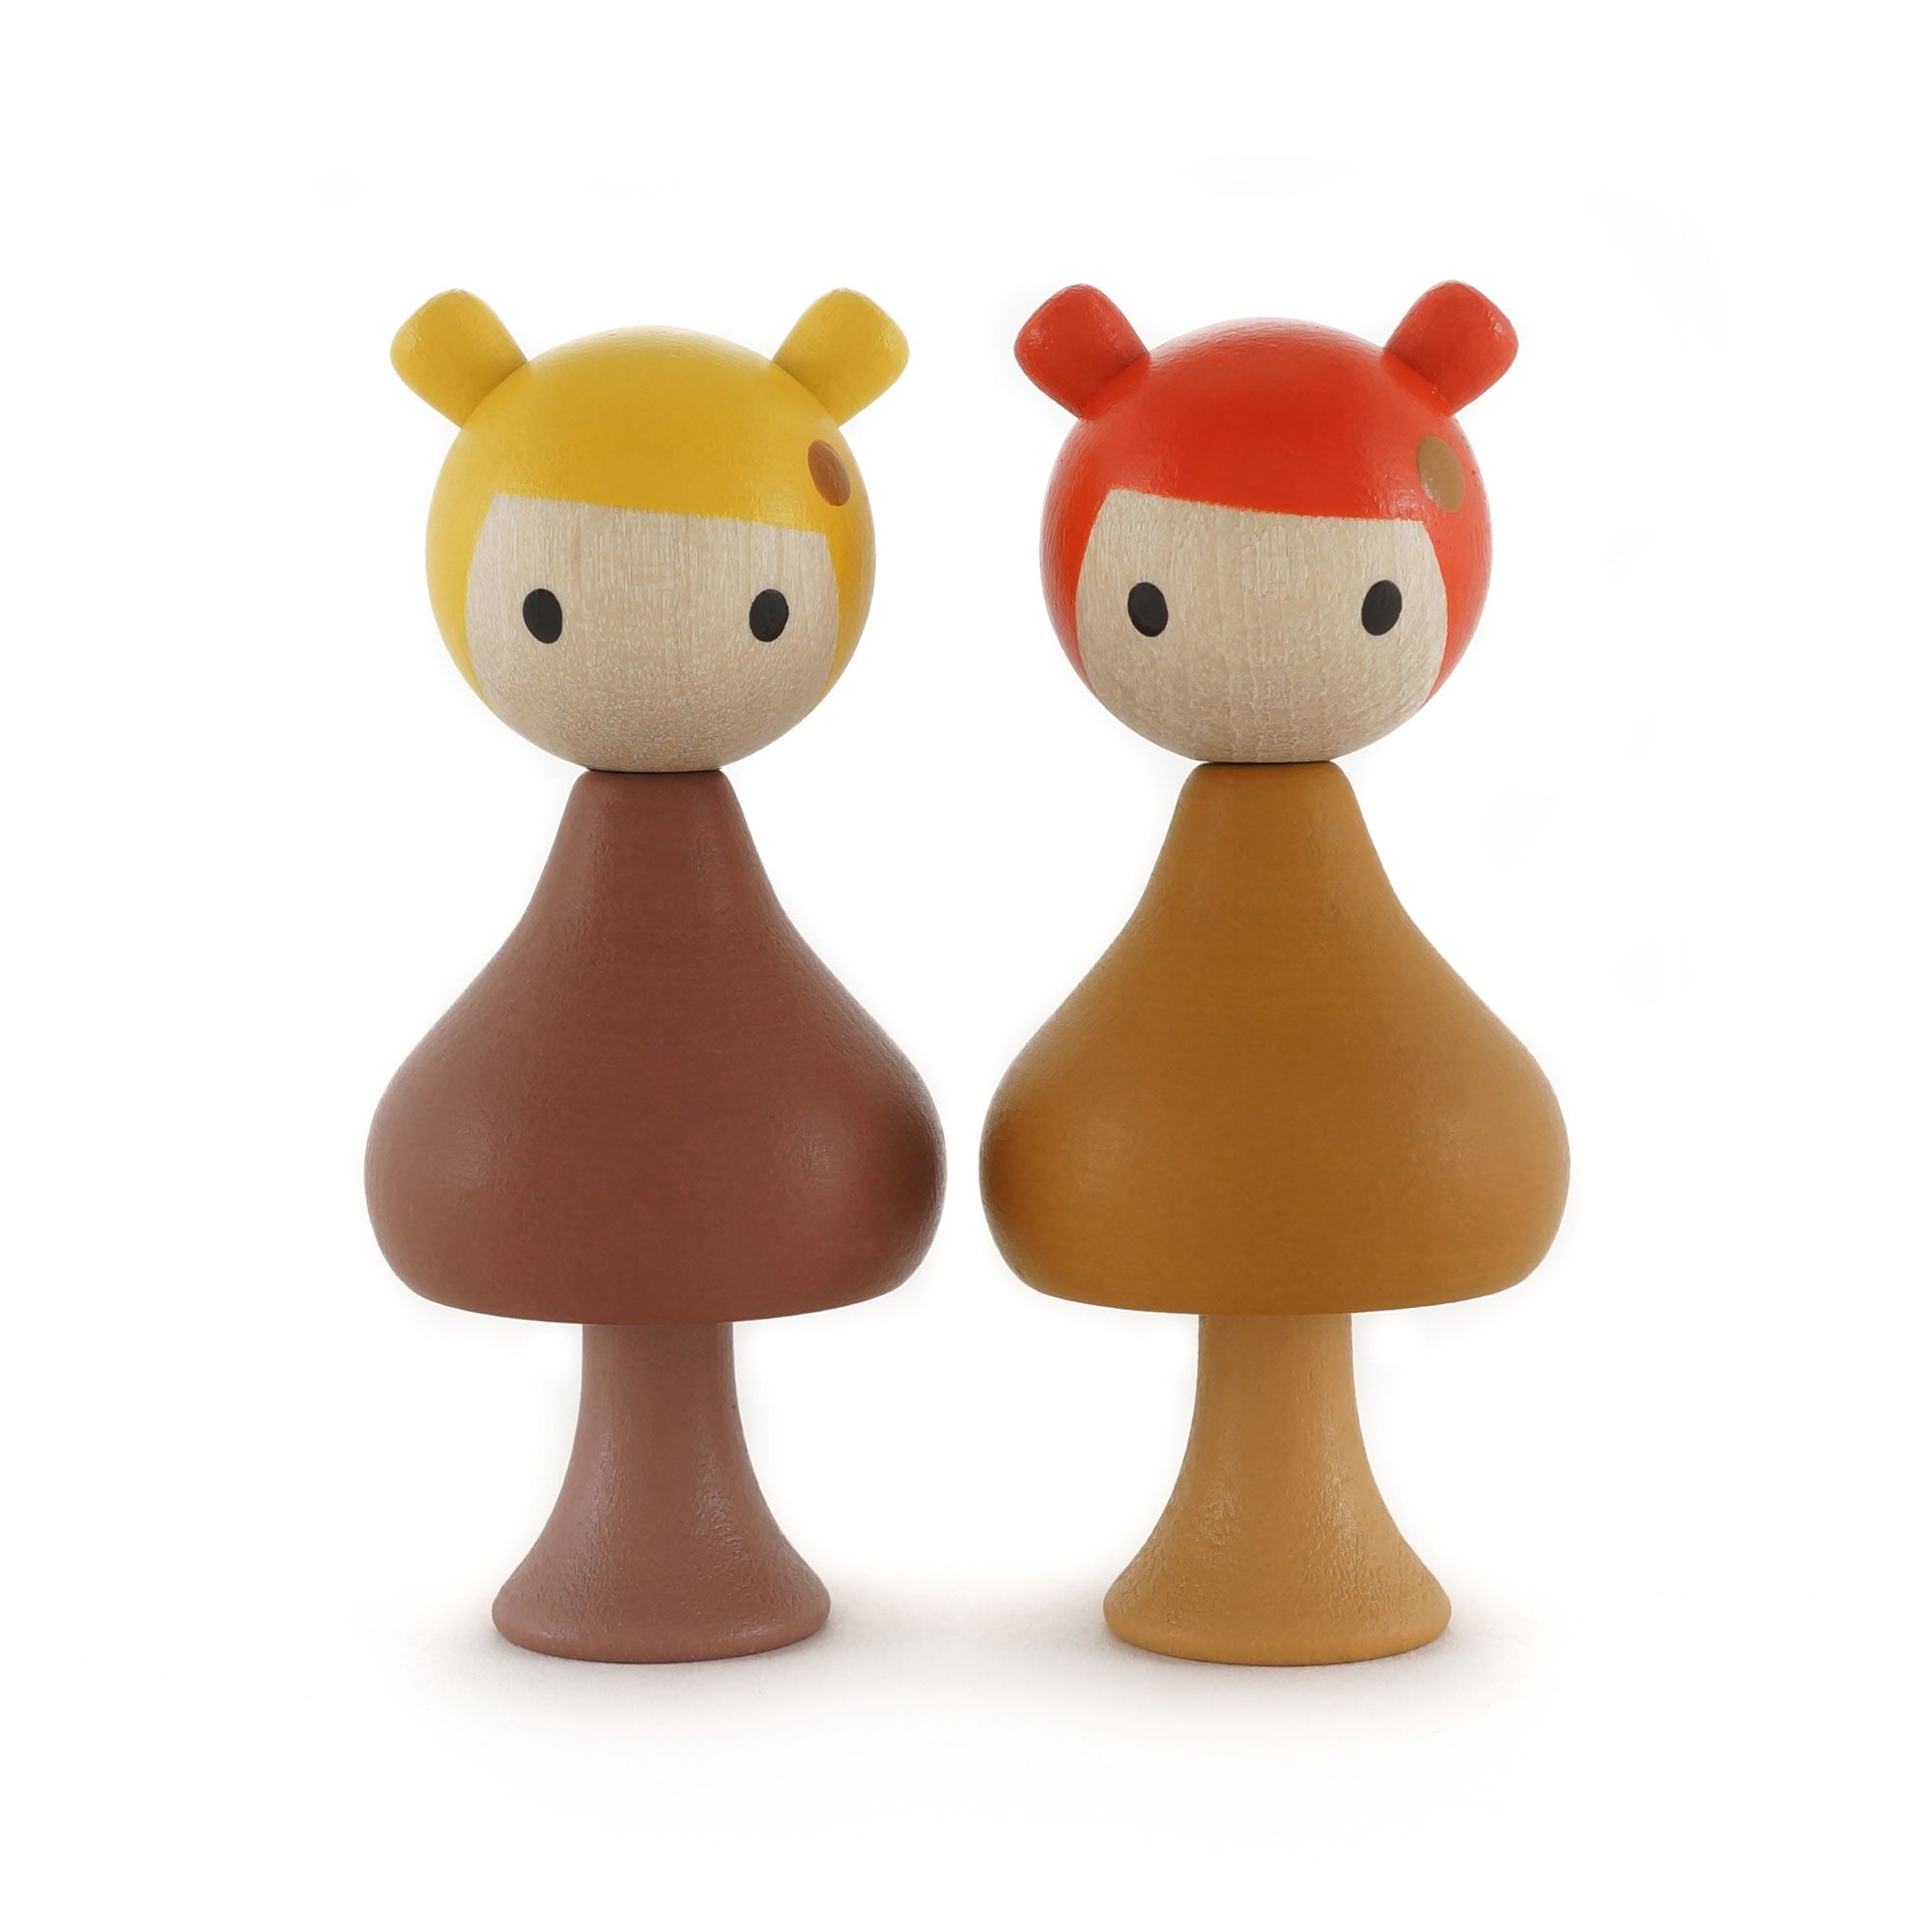 clicques houten speelgoed figuurtjes